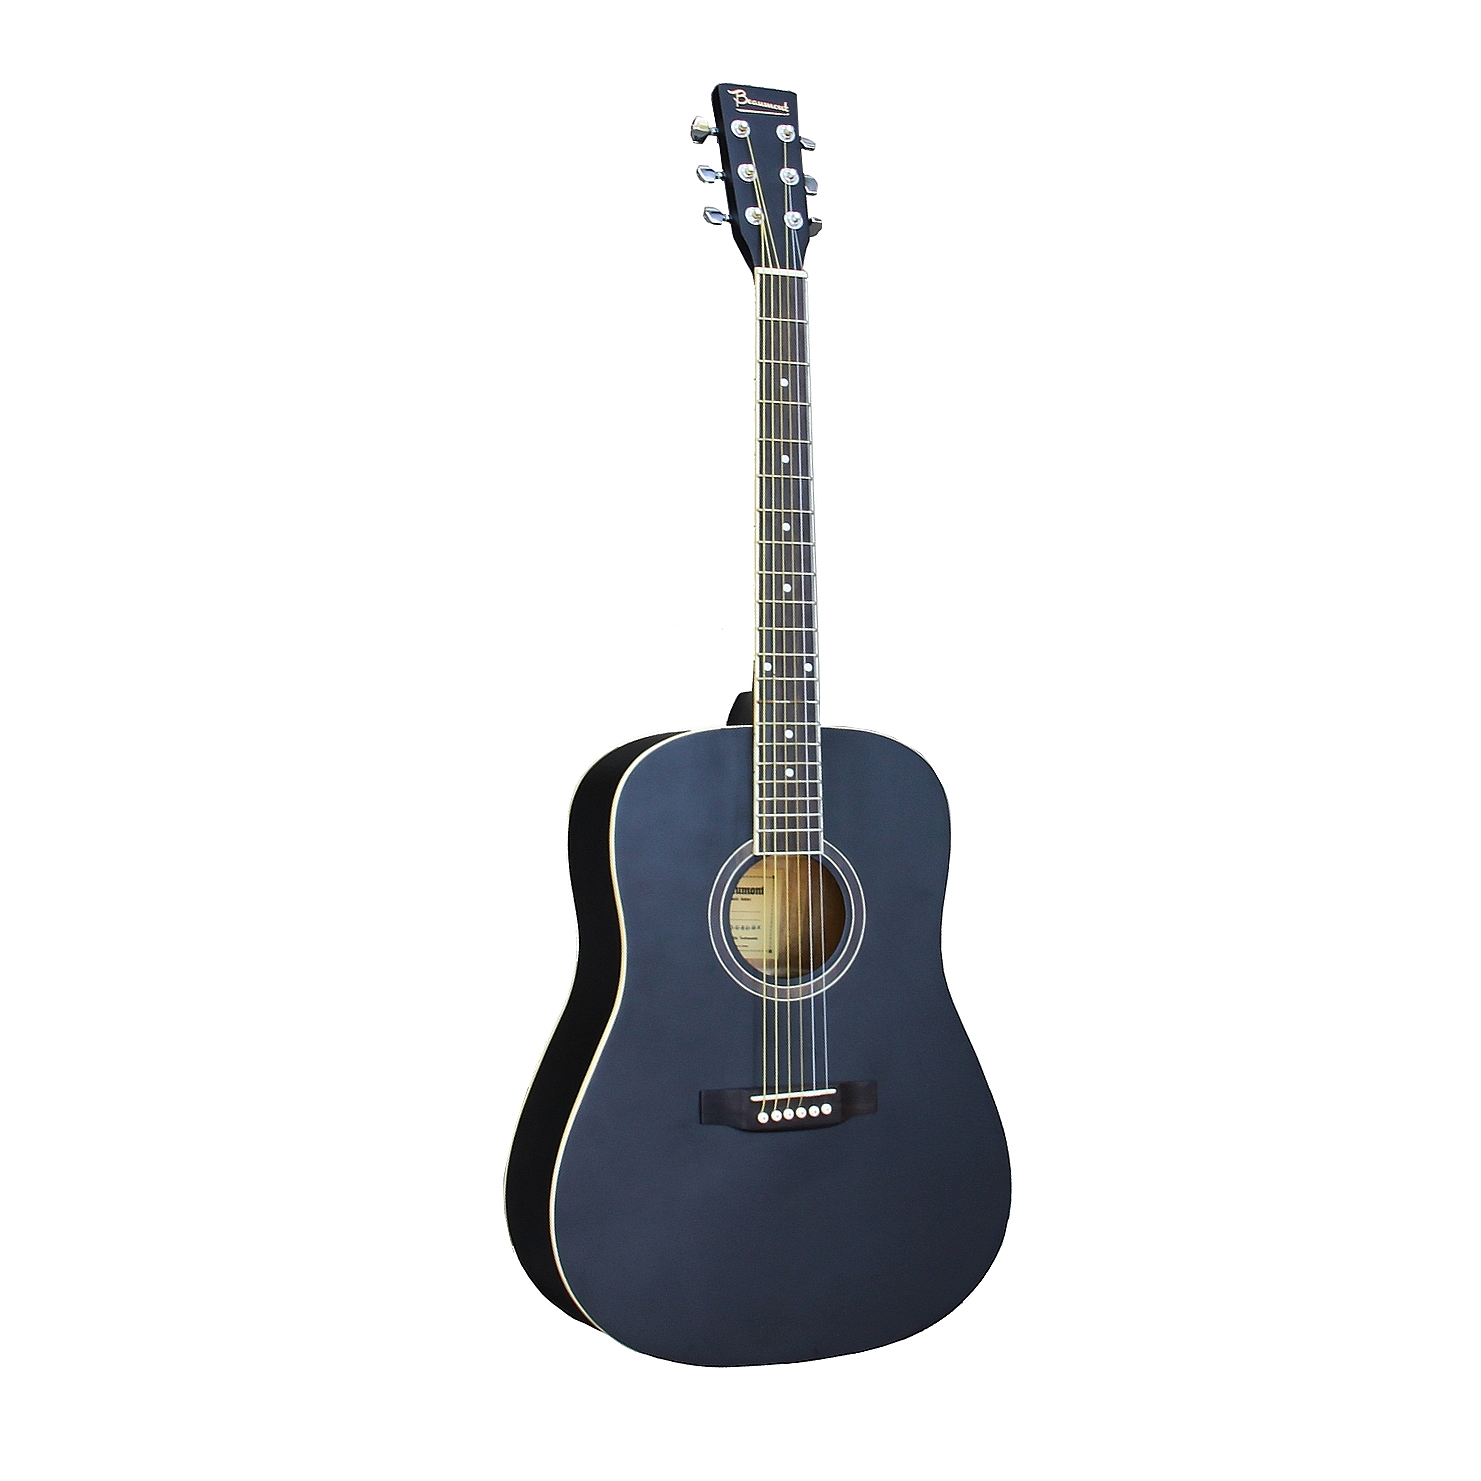 BEAUMONT DG80/BK - акустическая гитара, дредноут, корпус липа, цвет чёрный, матовый